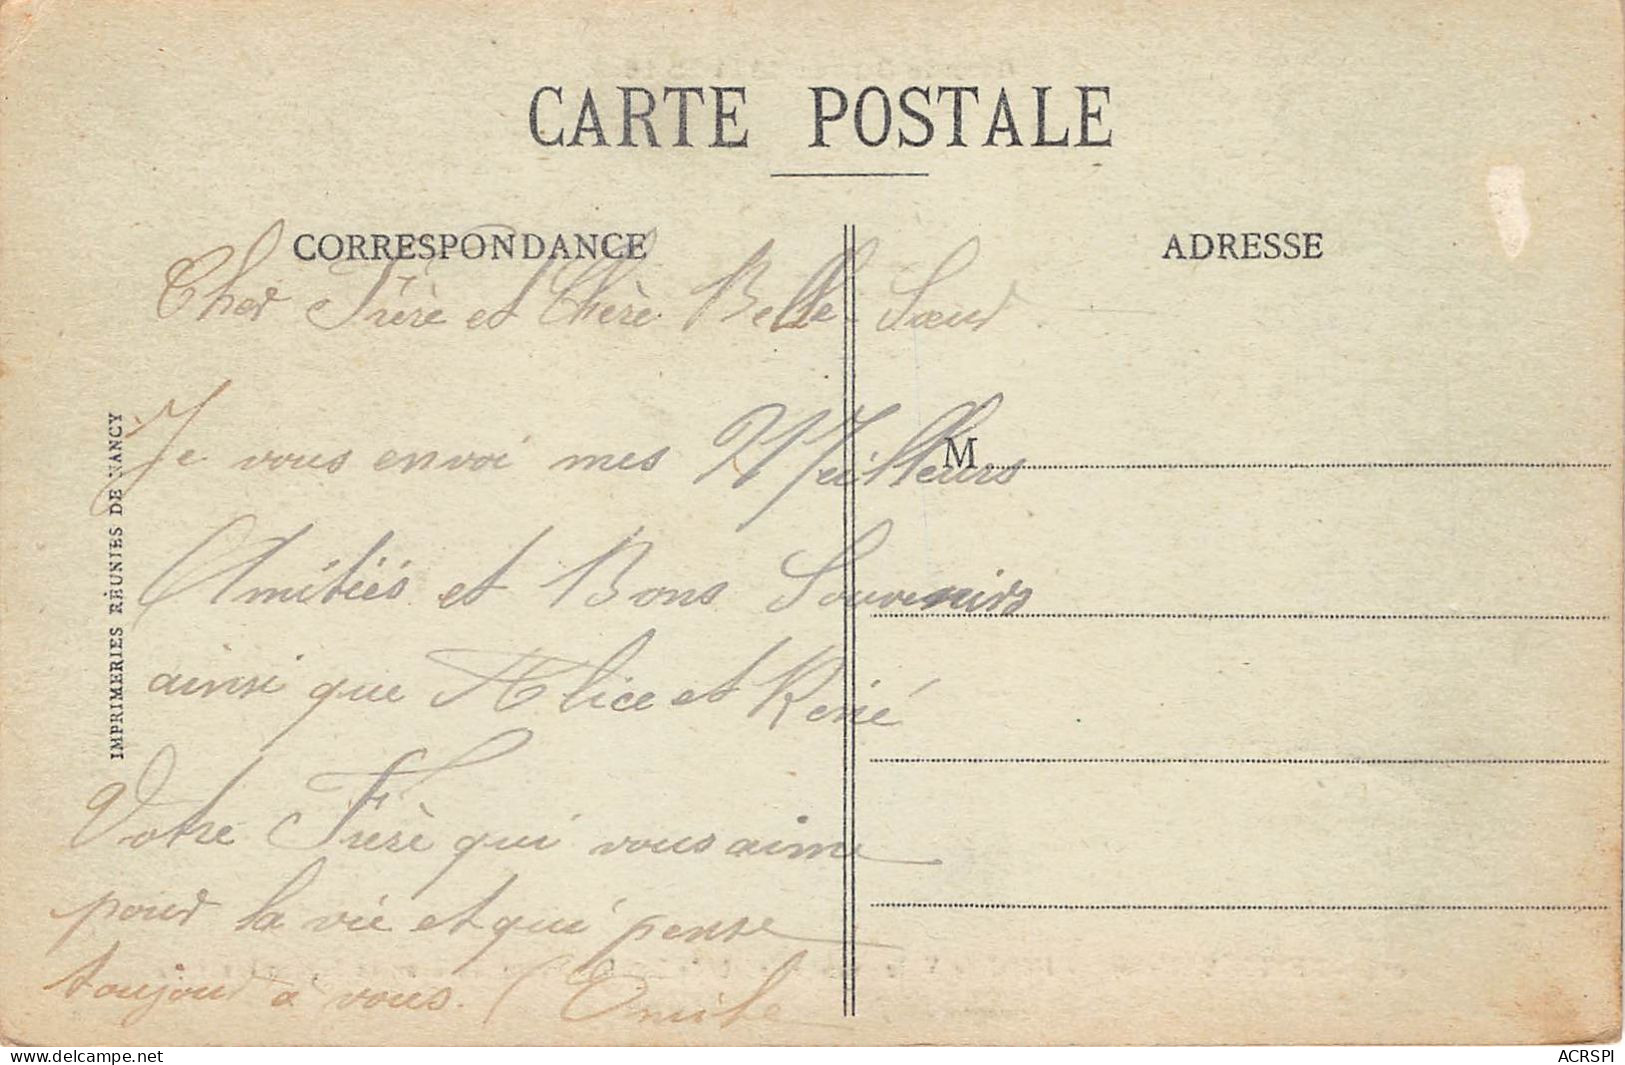 REVIGNY Hotel De Ville Avant Le Bombardement Du 6 Au 12 Septembre 1914 20(scan Recto-verso) MA860 - Revigny Sur Ornain